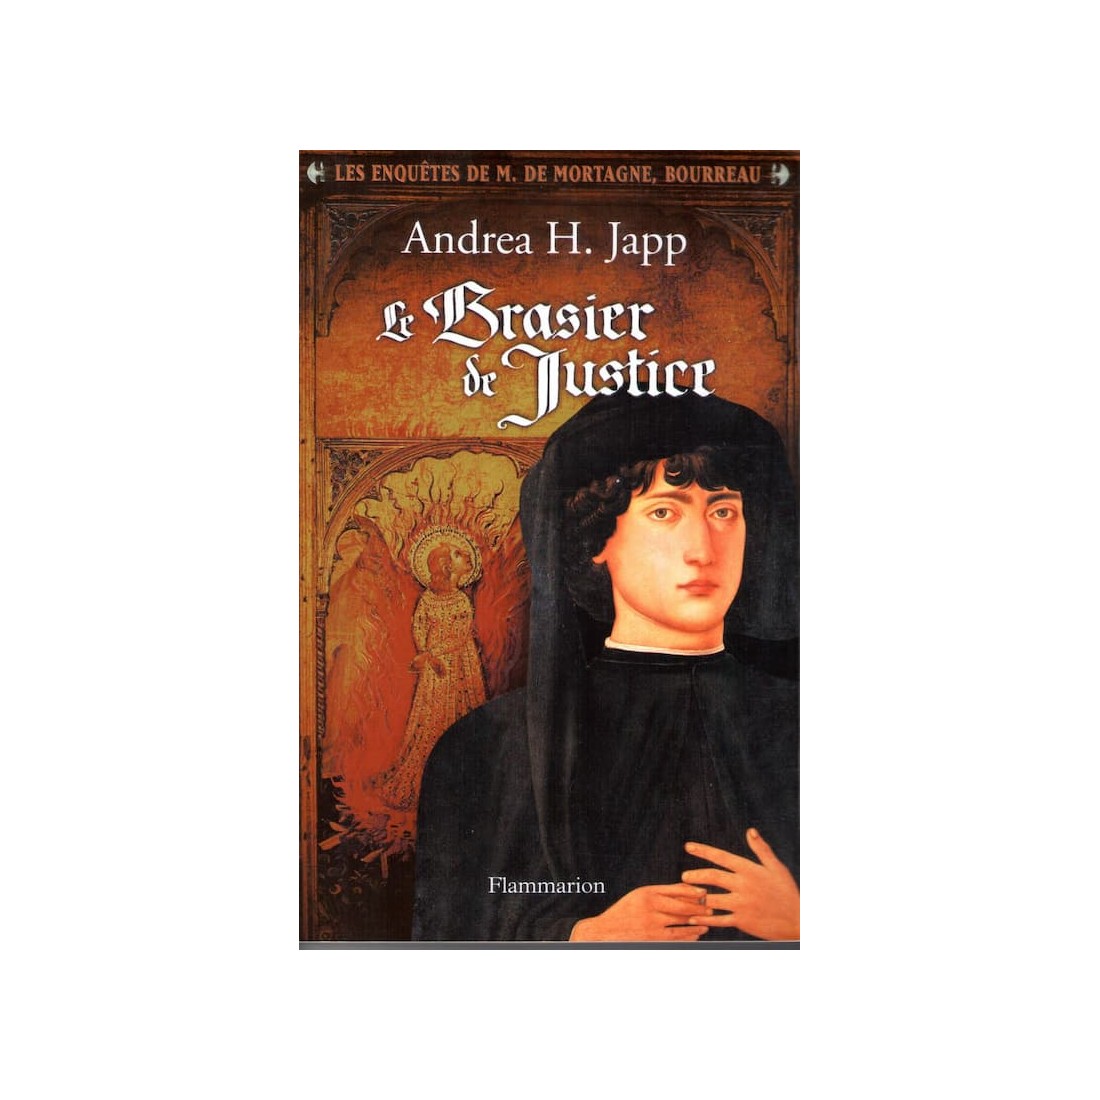 Le brasier de justice - Roman de Andrea H. Japp - Ocazlivres.com